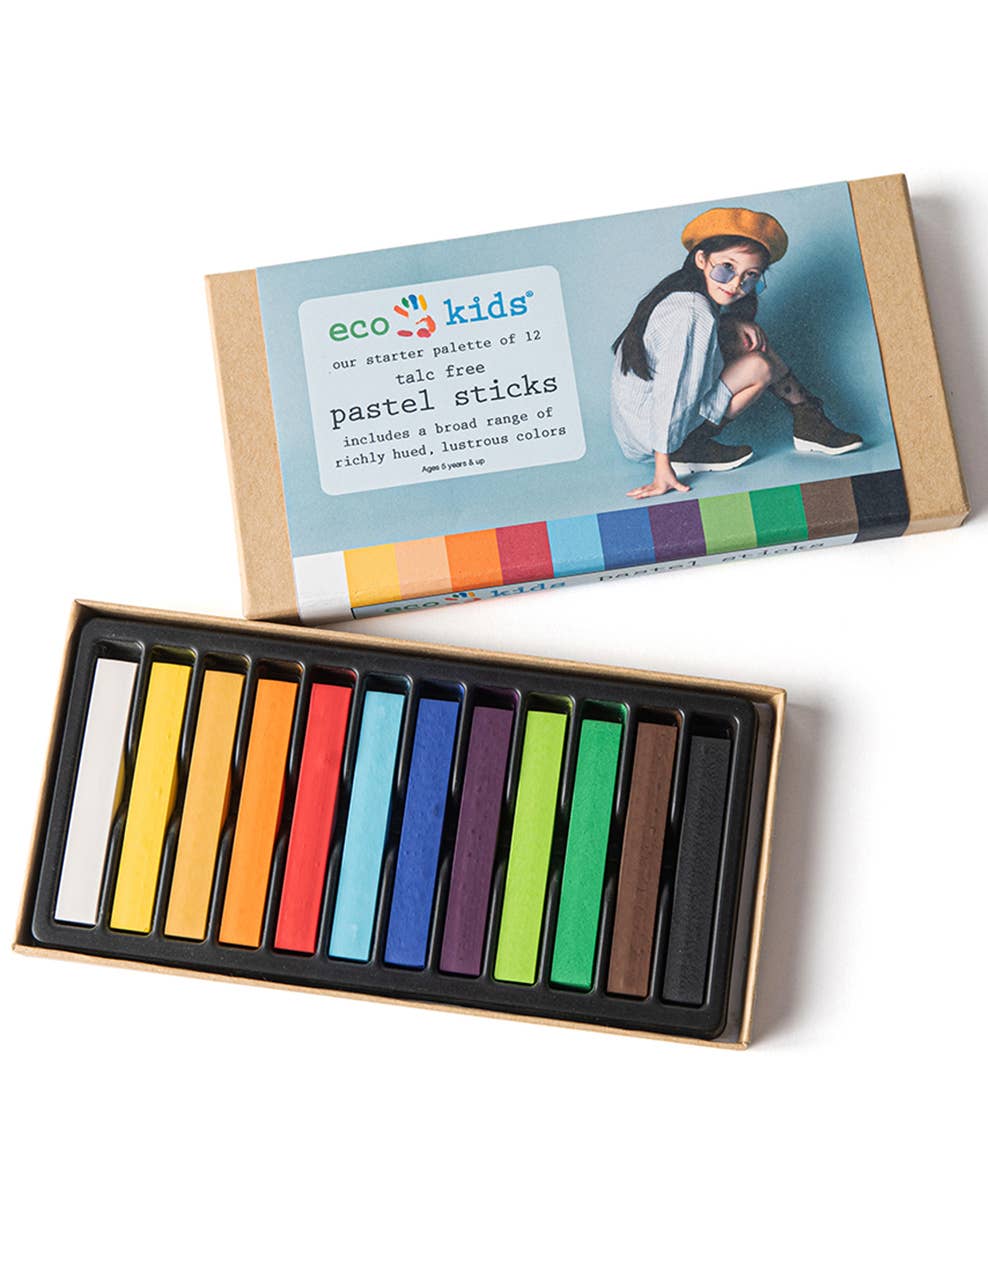 Eco- kids pastel sticks